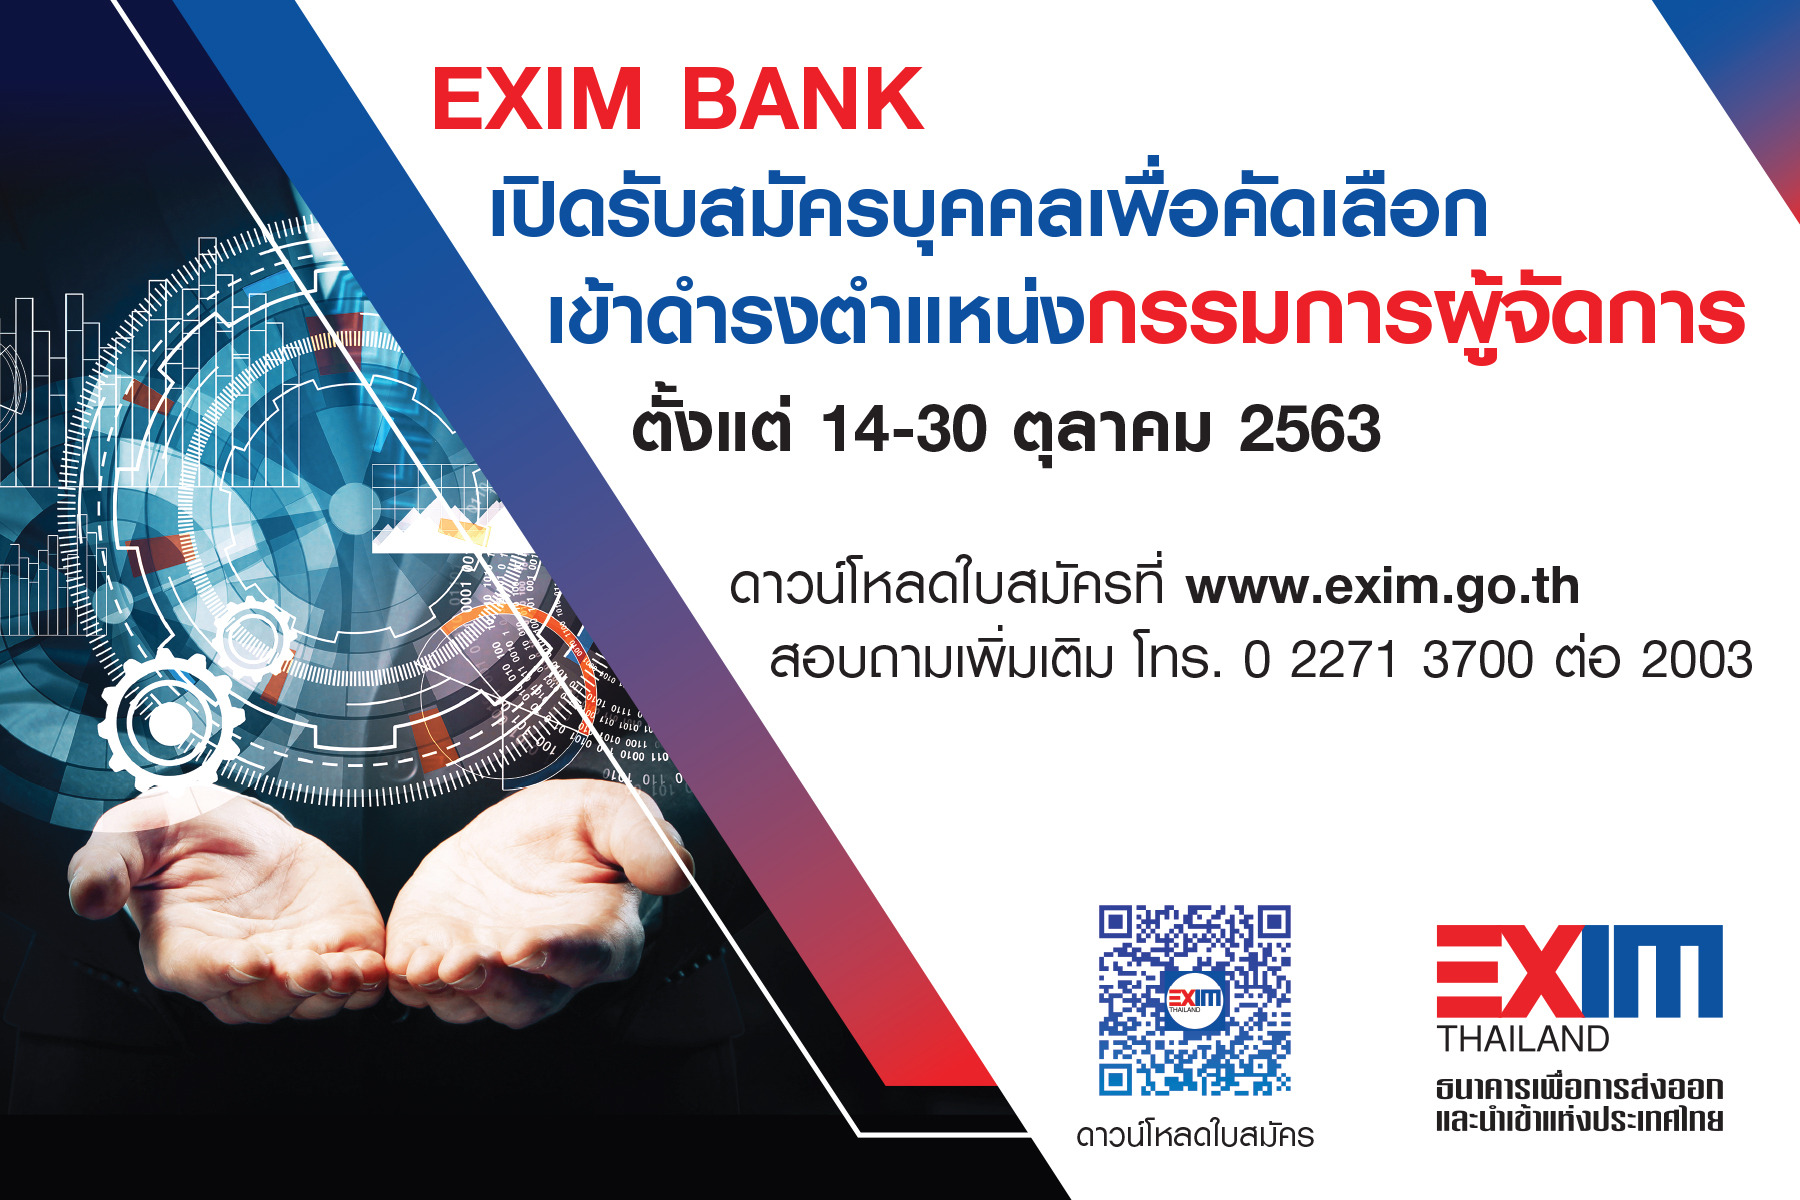 EXIM BANK เปิดรับสมัครบุคคลเพื่อคัดเลือกเข้าดำรงตำแหน่ง กรรมการผู้จัดการ